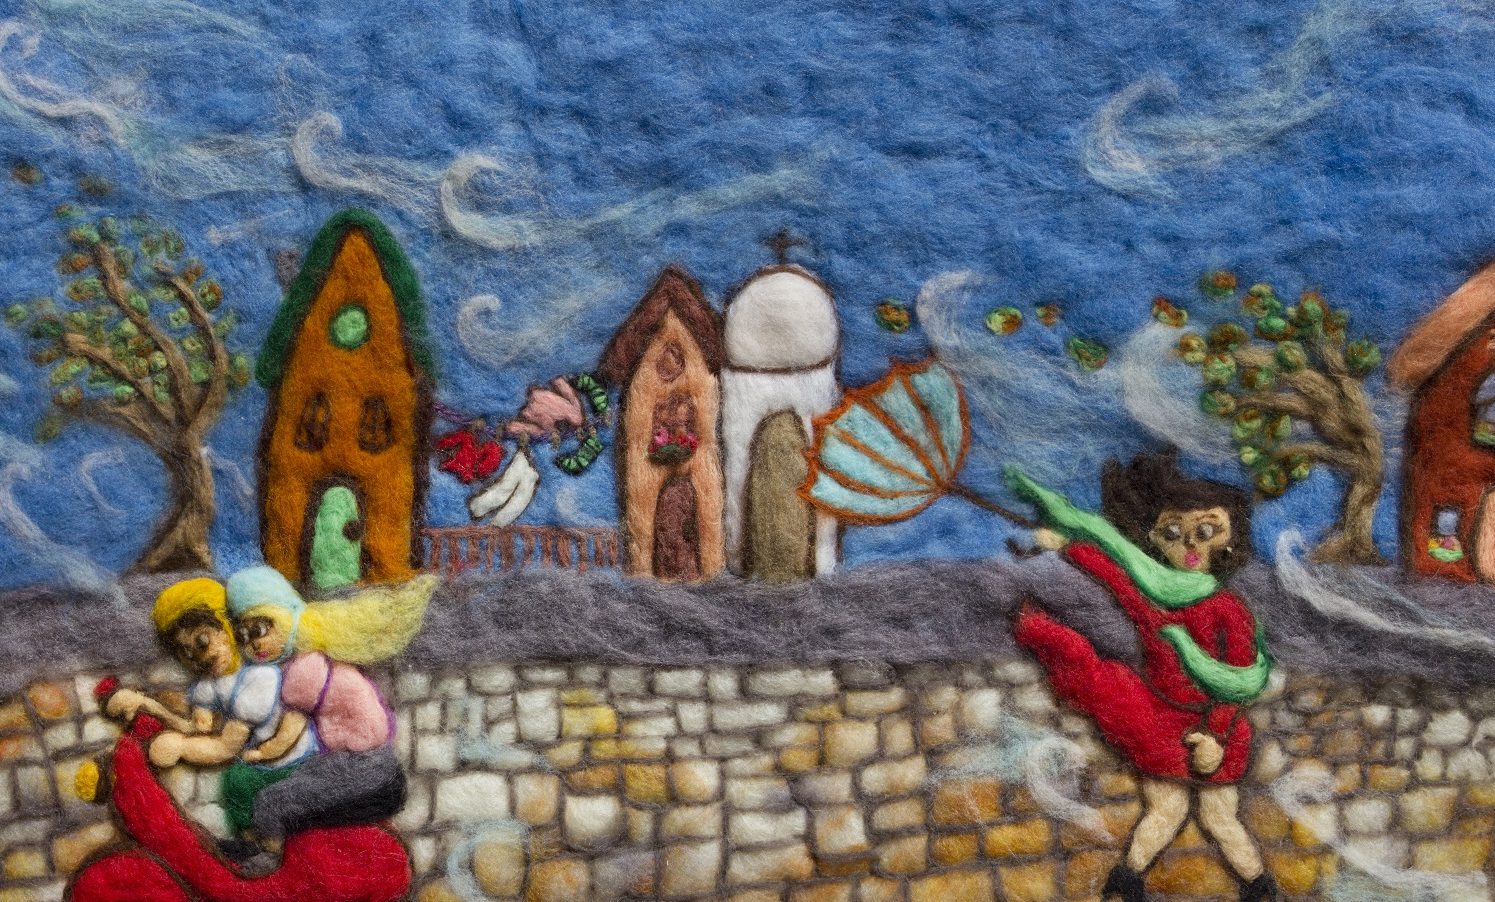 Exposição “Fios que Contam” reúne ilustrações feitas em lã por Patrícia Langlois para livros infantis